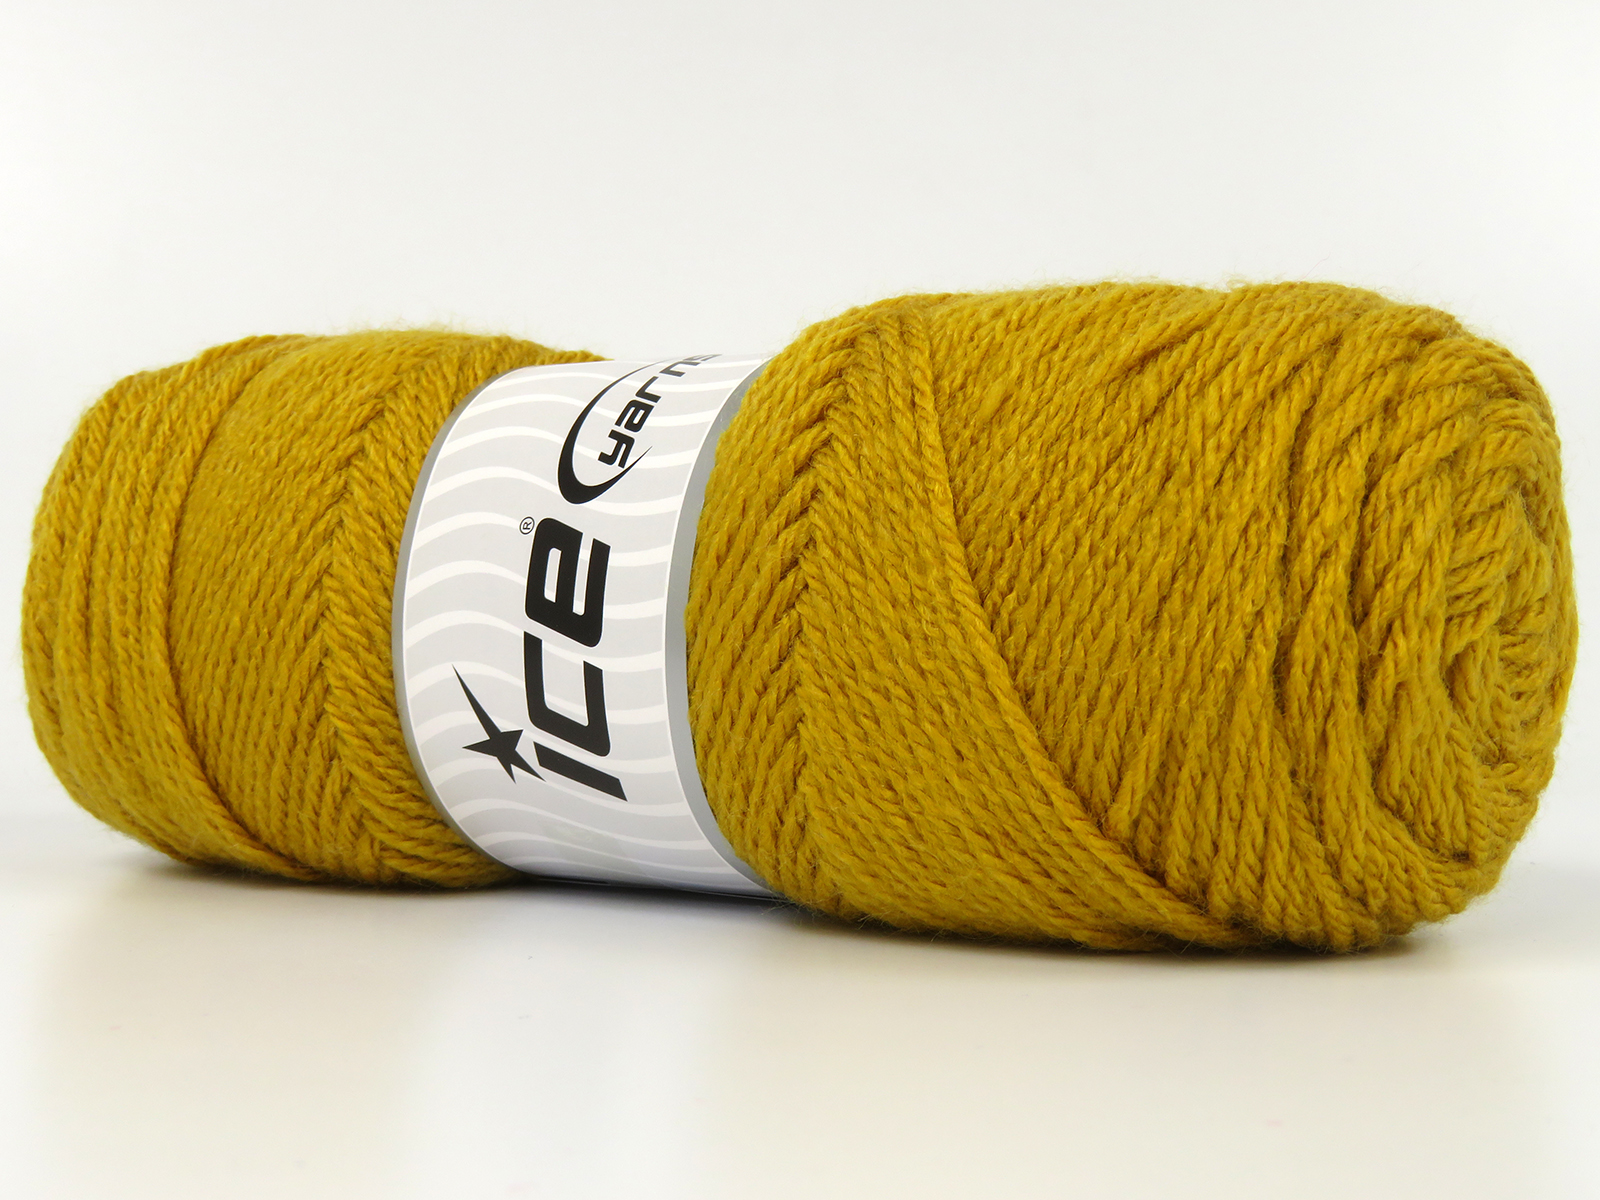 Ice Yarns Online Yarn Store : knitting yarn, discount yarn, yarn